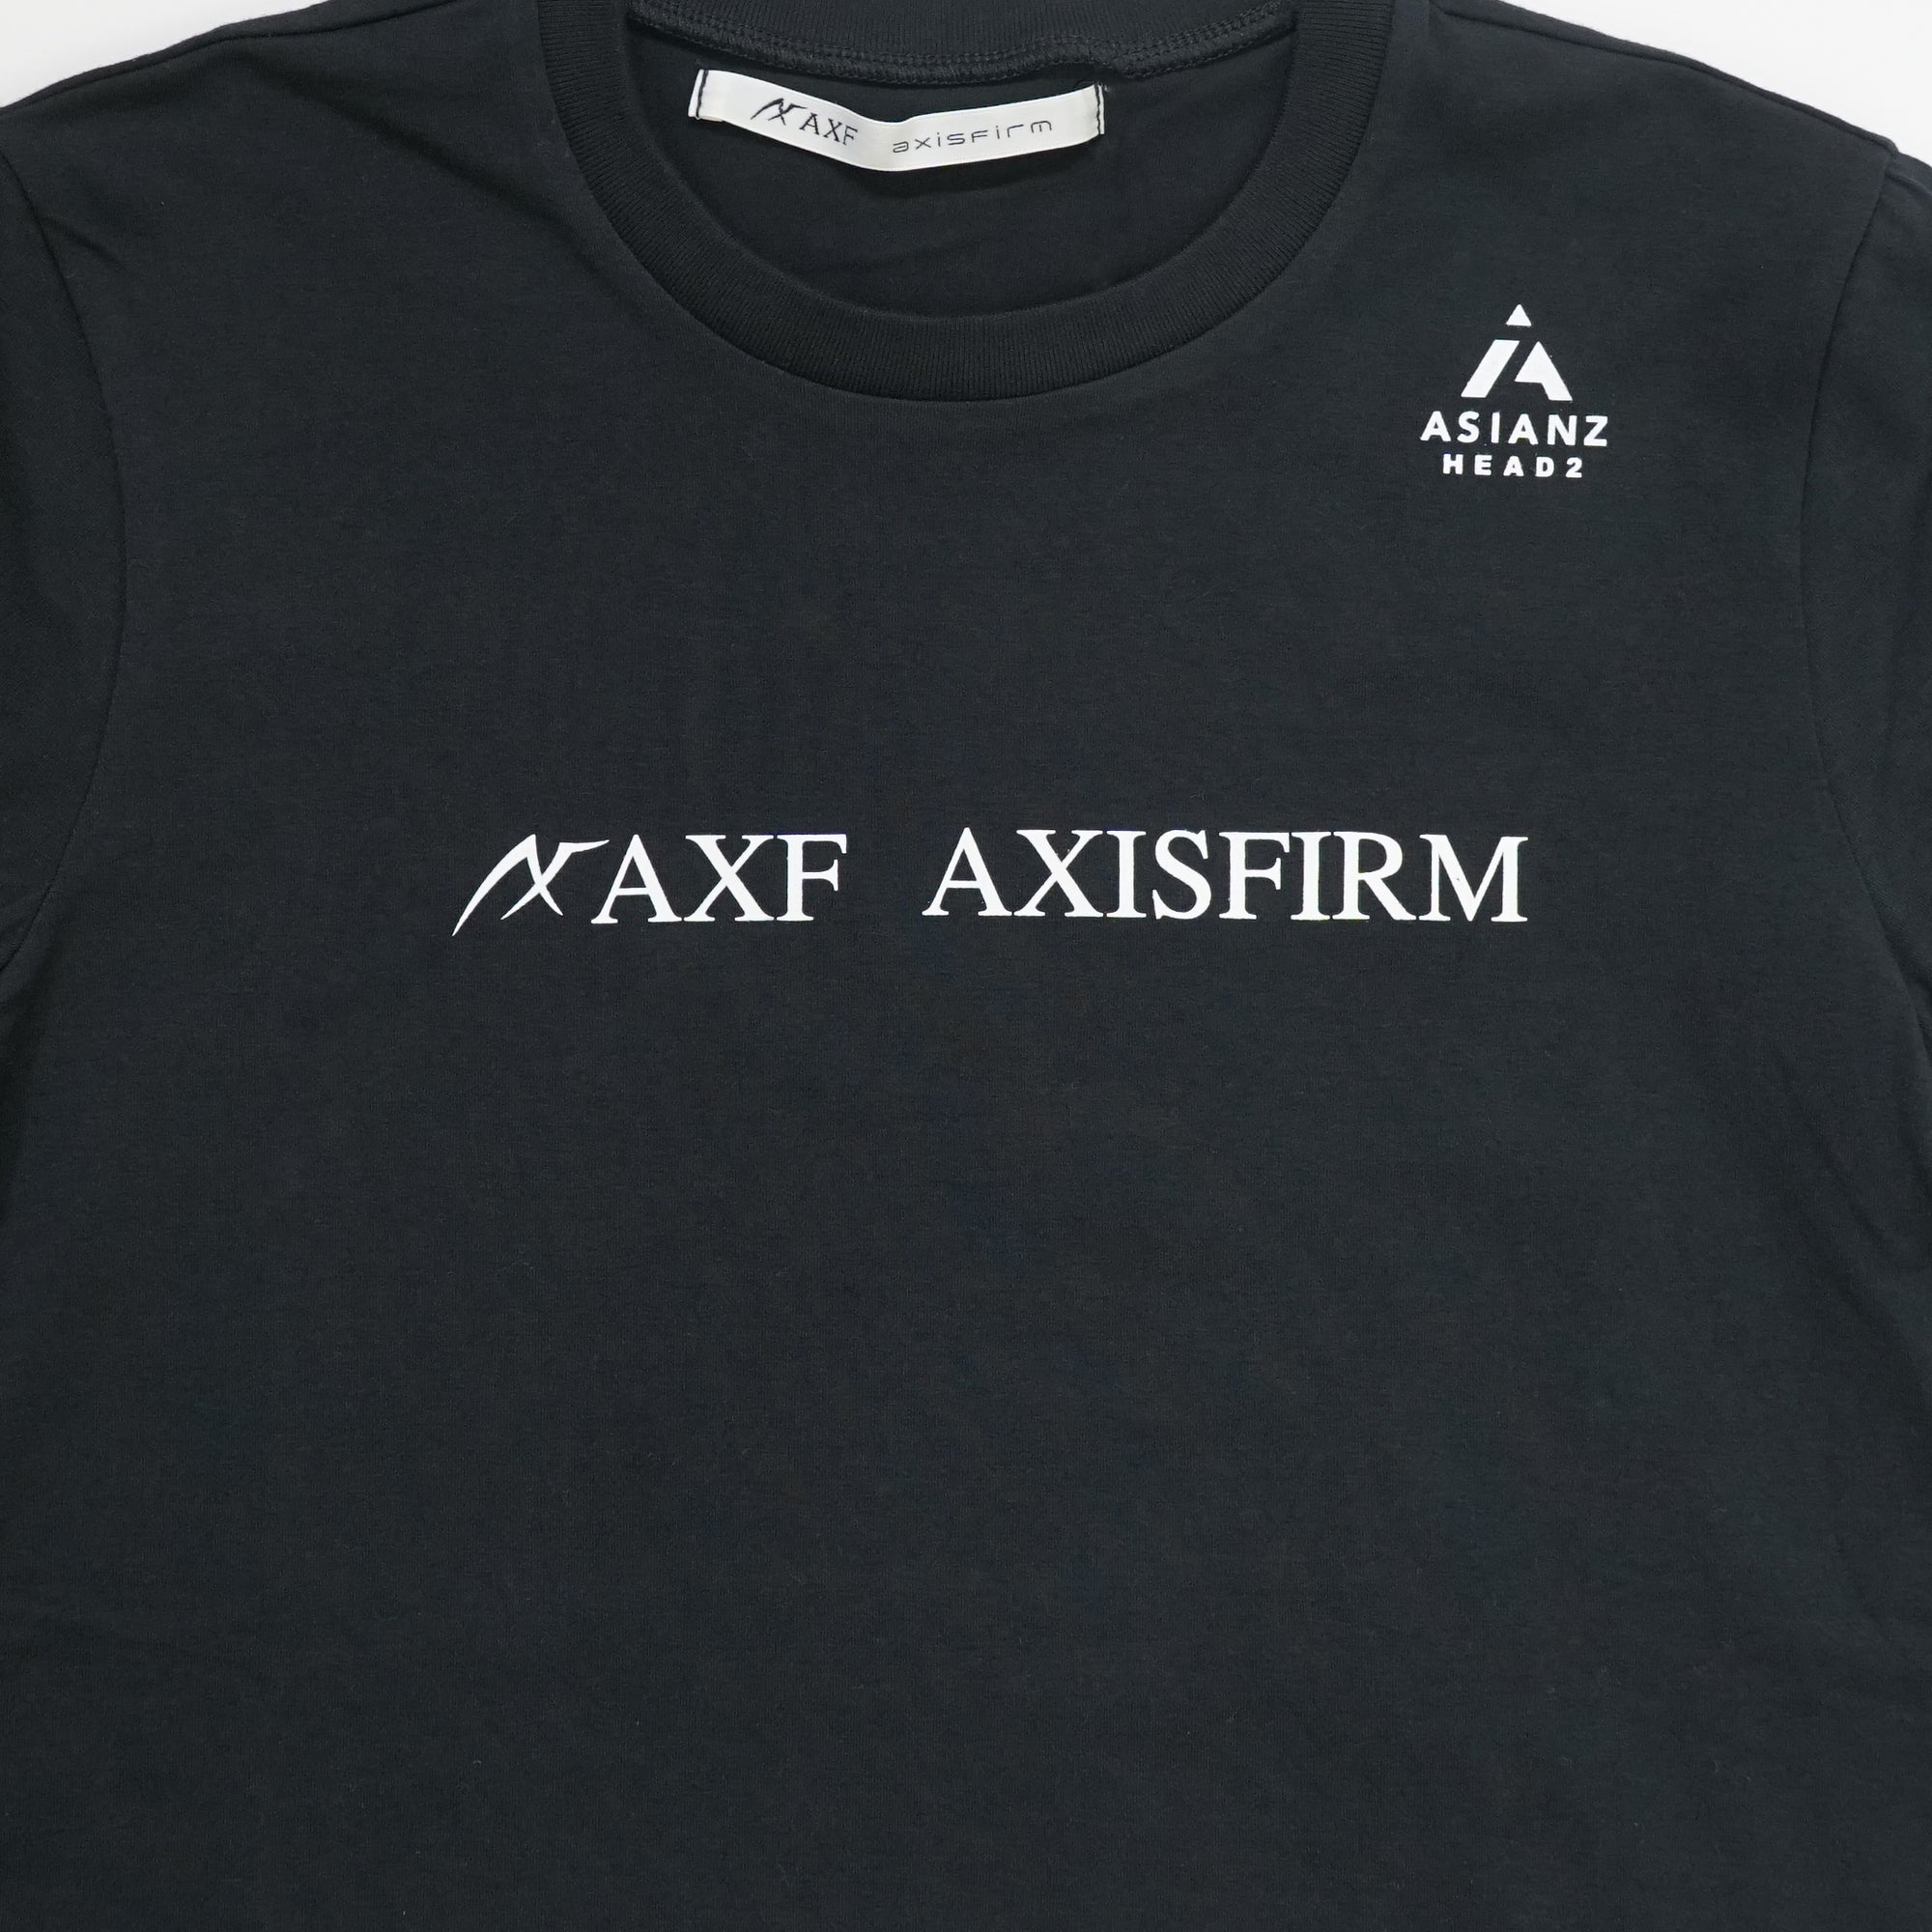 40%オフ! セール商品)ASIANZ HEAD2 × AXF クルーネックシンプルロゴ